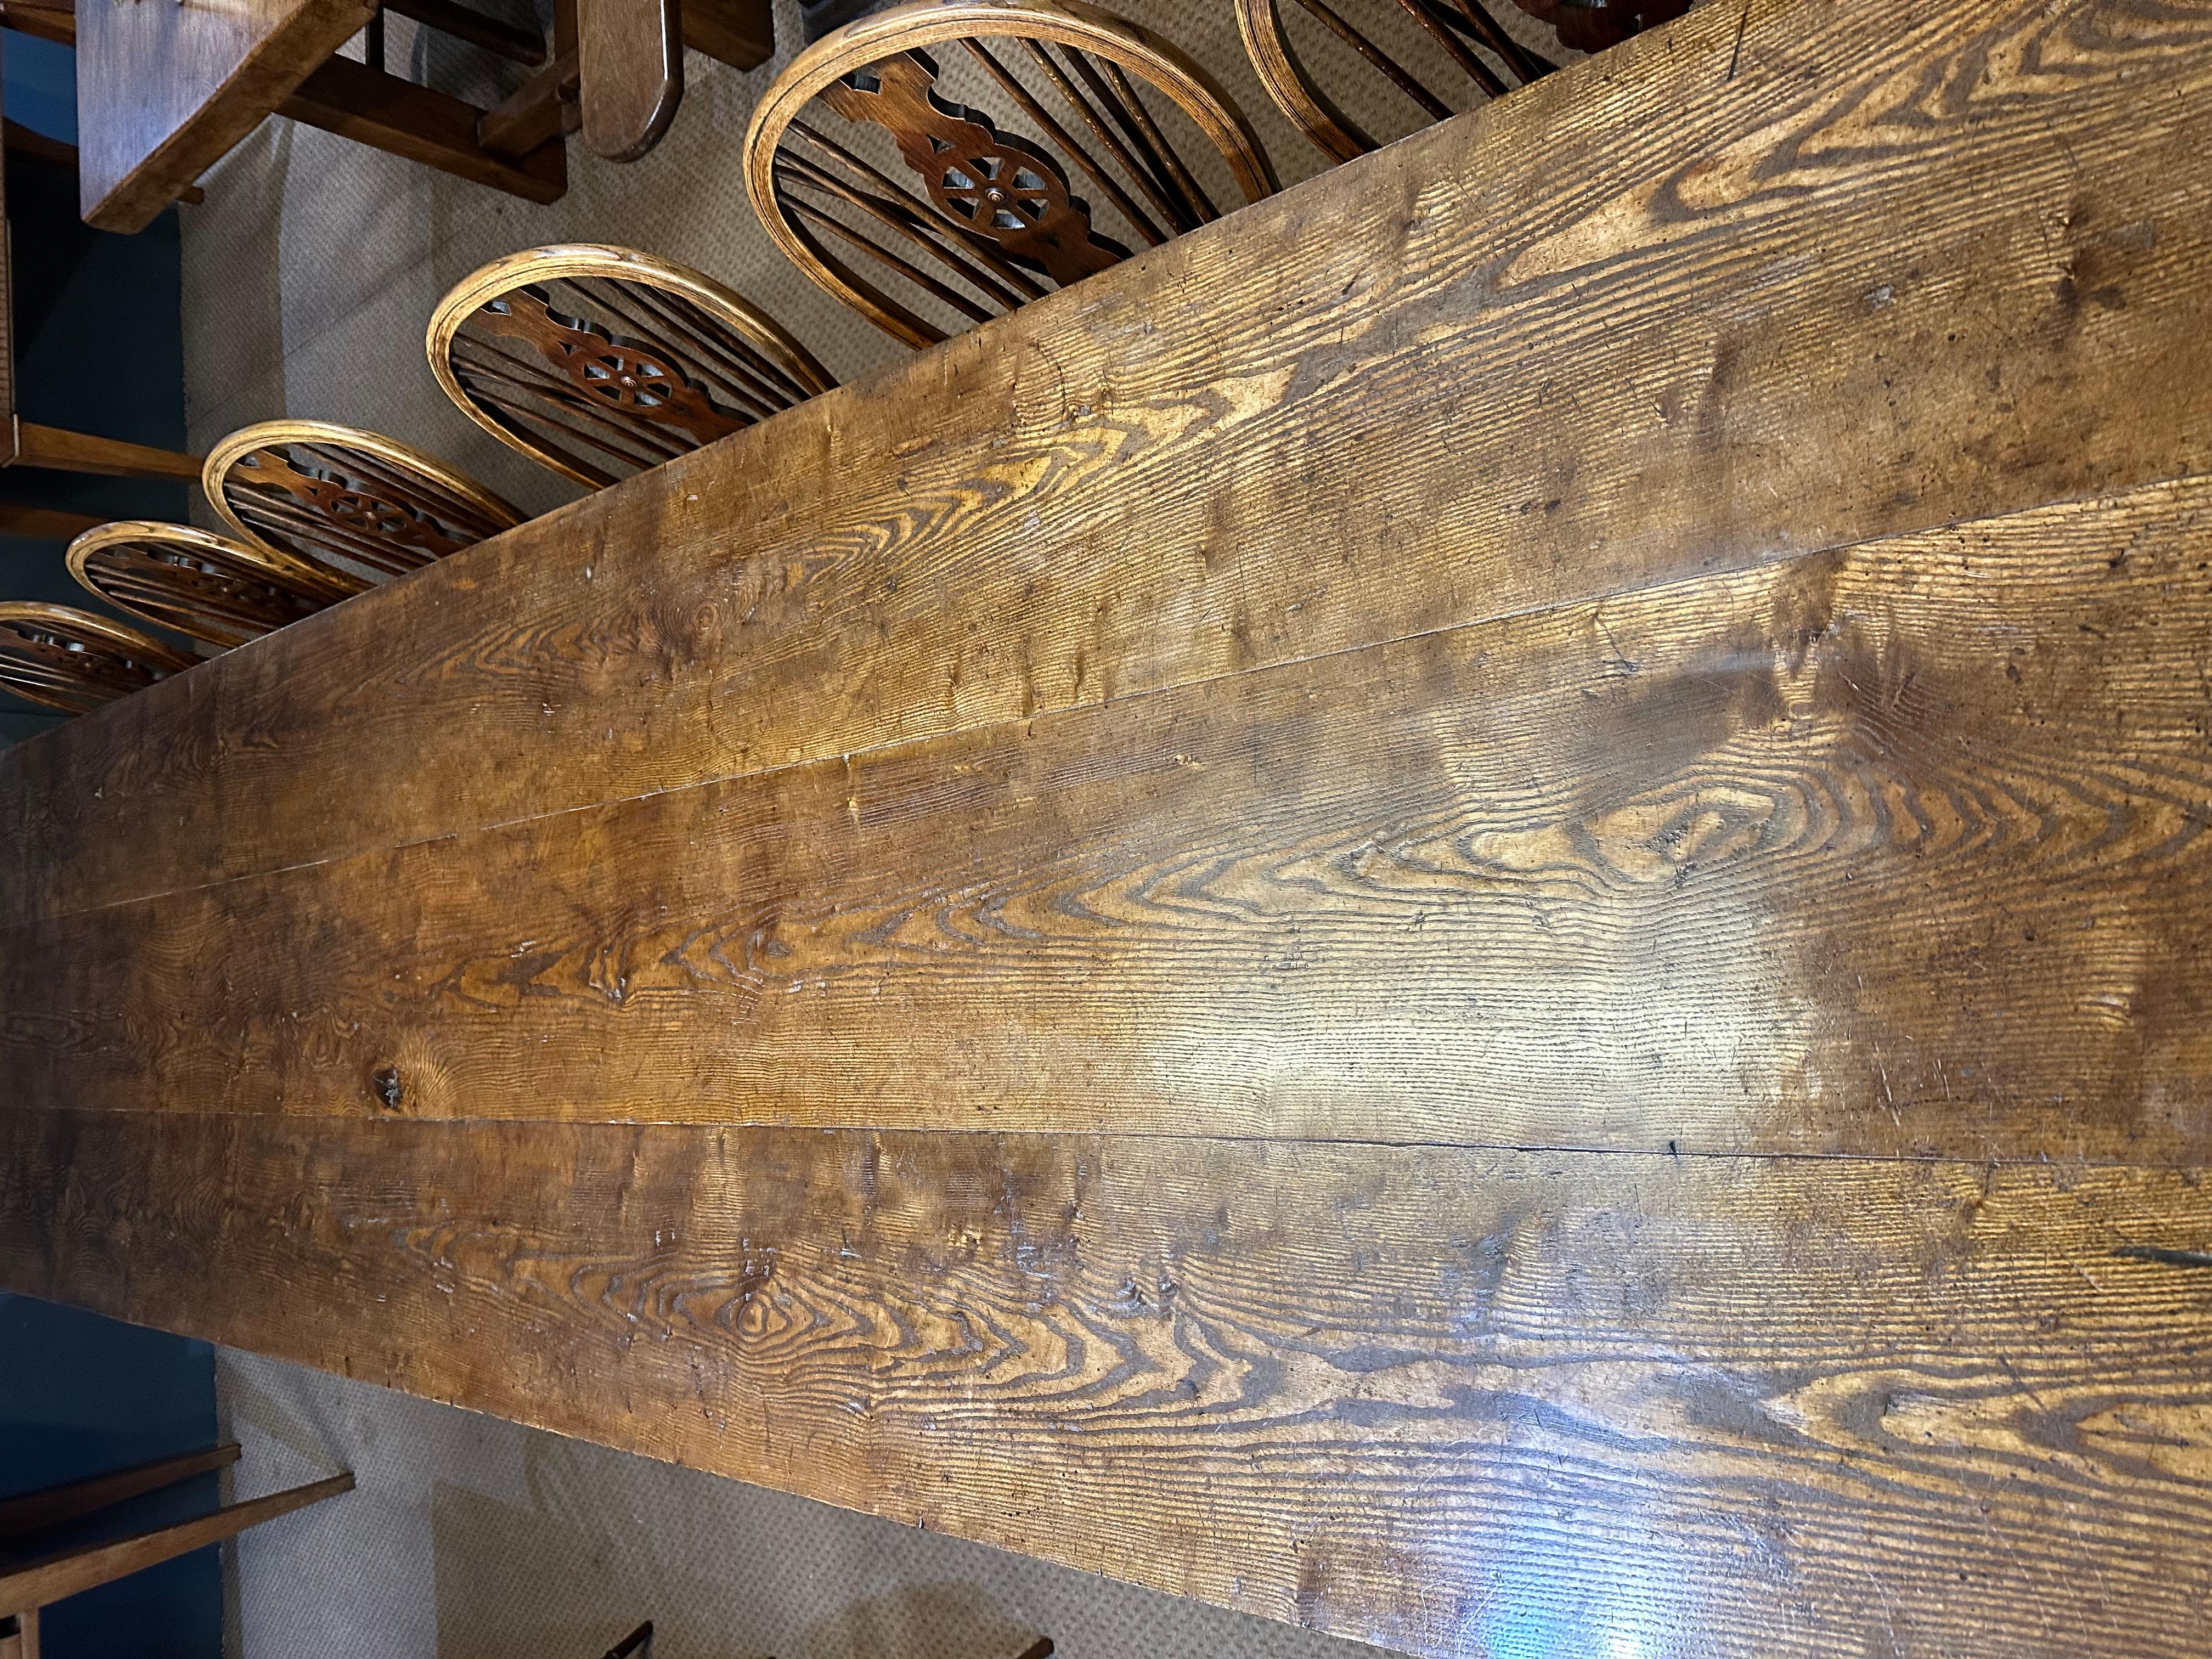 Grande table de ferme en chêne et frêne du 18e siècle et plus tard. Cette magnifique table de ferme du XVIIIe siècle et des siècles suivants présente une couleur et une patine remarquables sur son plateau à trois larges planches. Soutenue par une